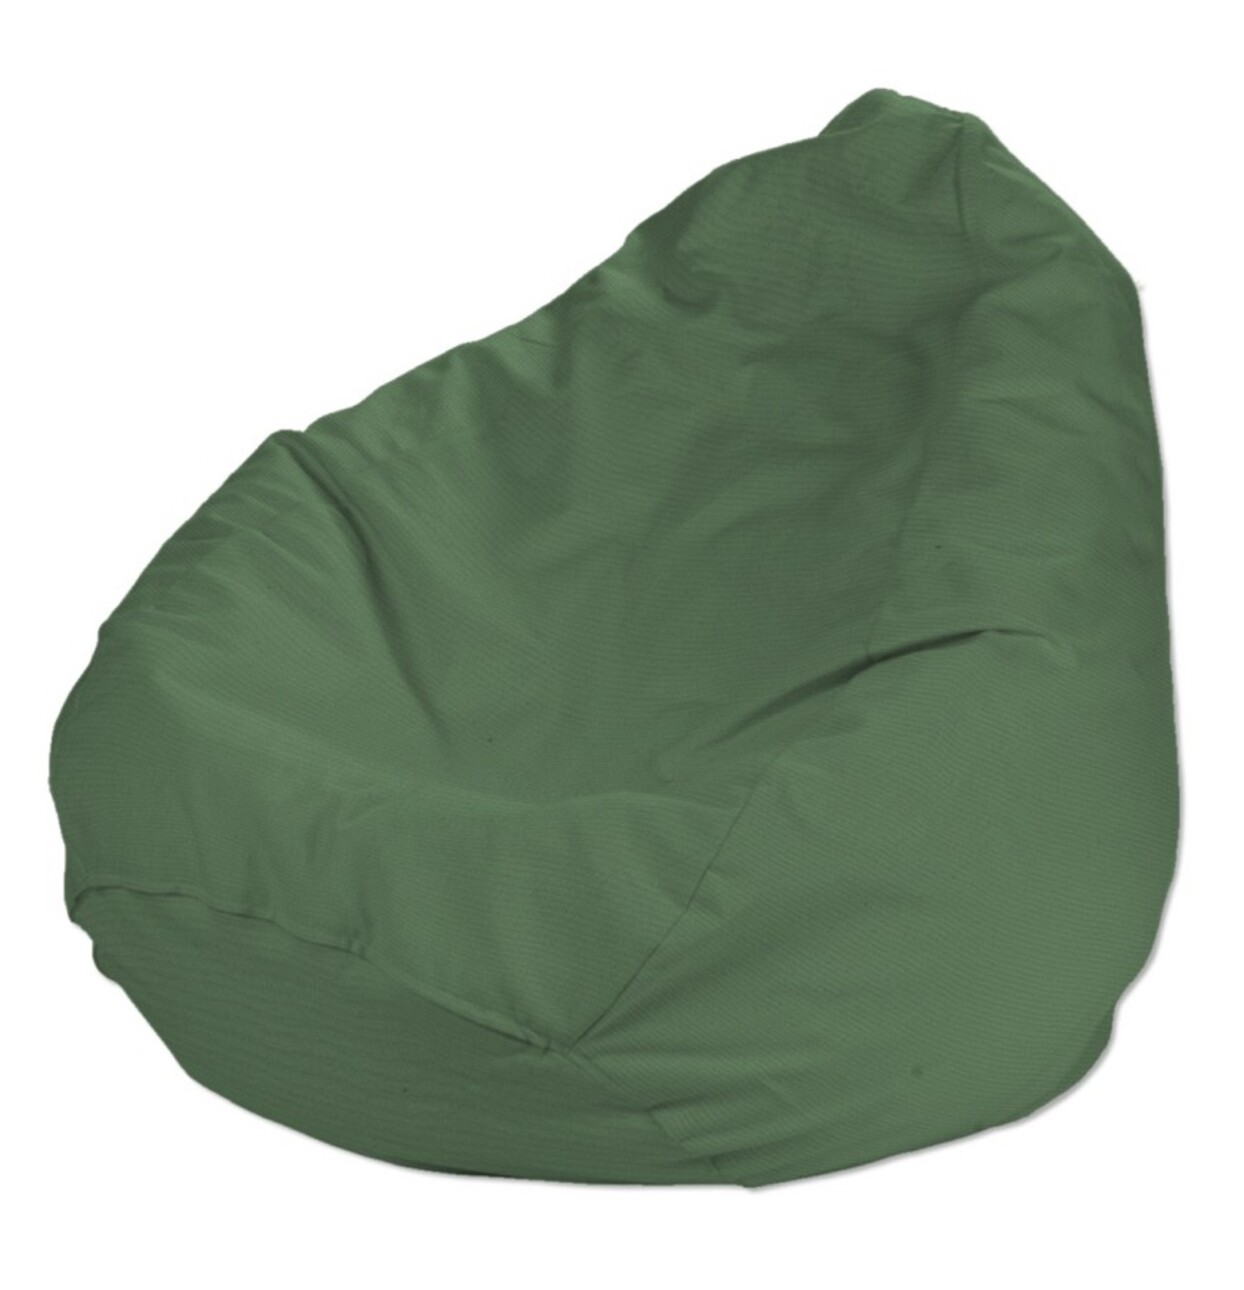 Bezug für Sitzsack, grün, Bezug für Sitzsack Ø50 x 85 cm, Loneta (133-18) günstig online kaufen